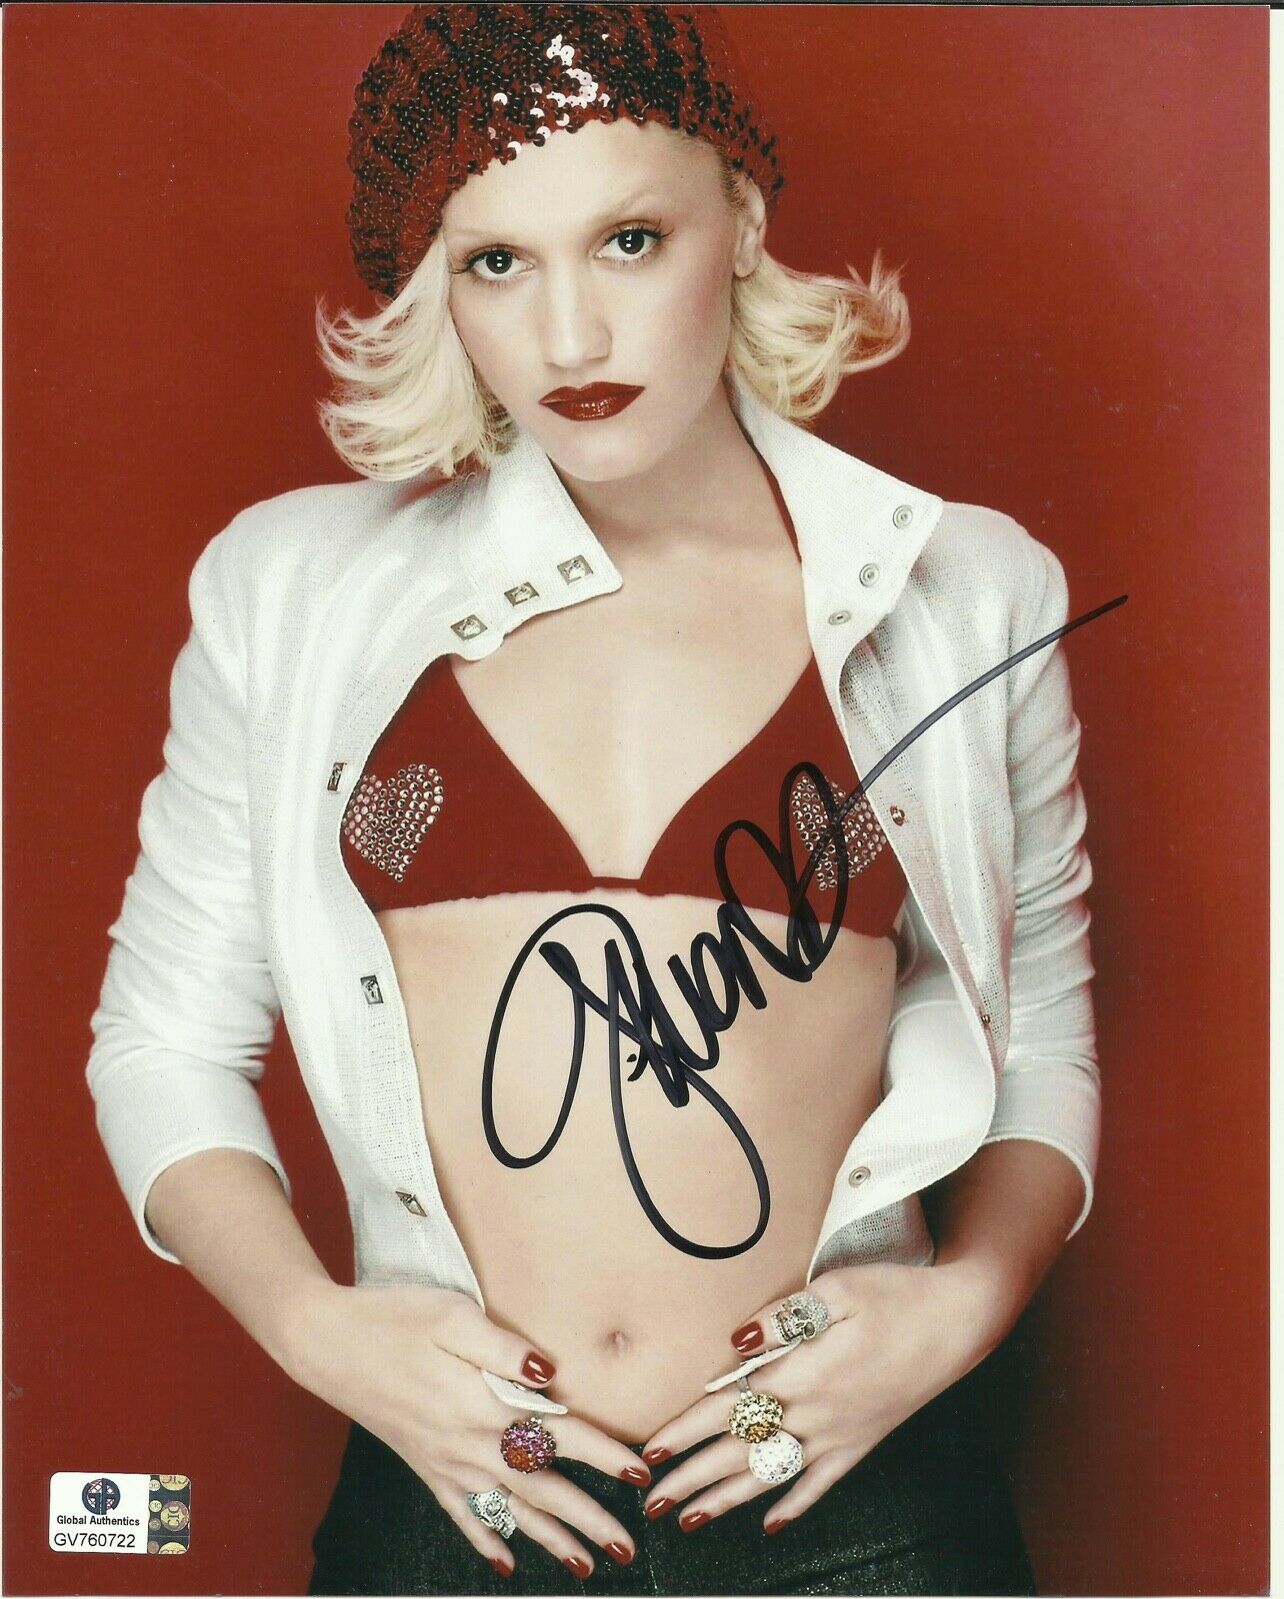 Gwen Stefani (no Doubt) Signed Autograph Ga Authenticated 8x10 Photo